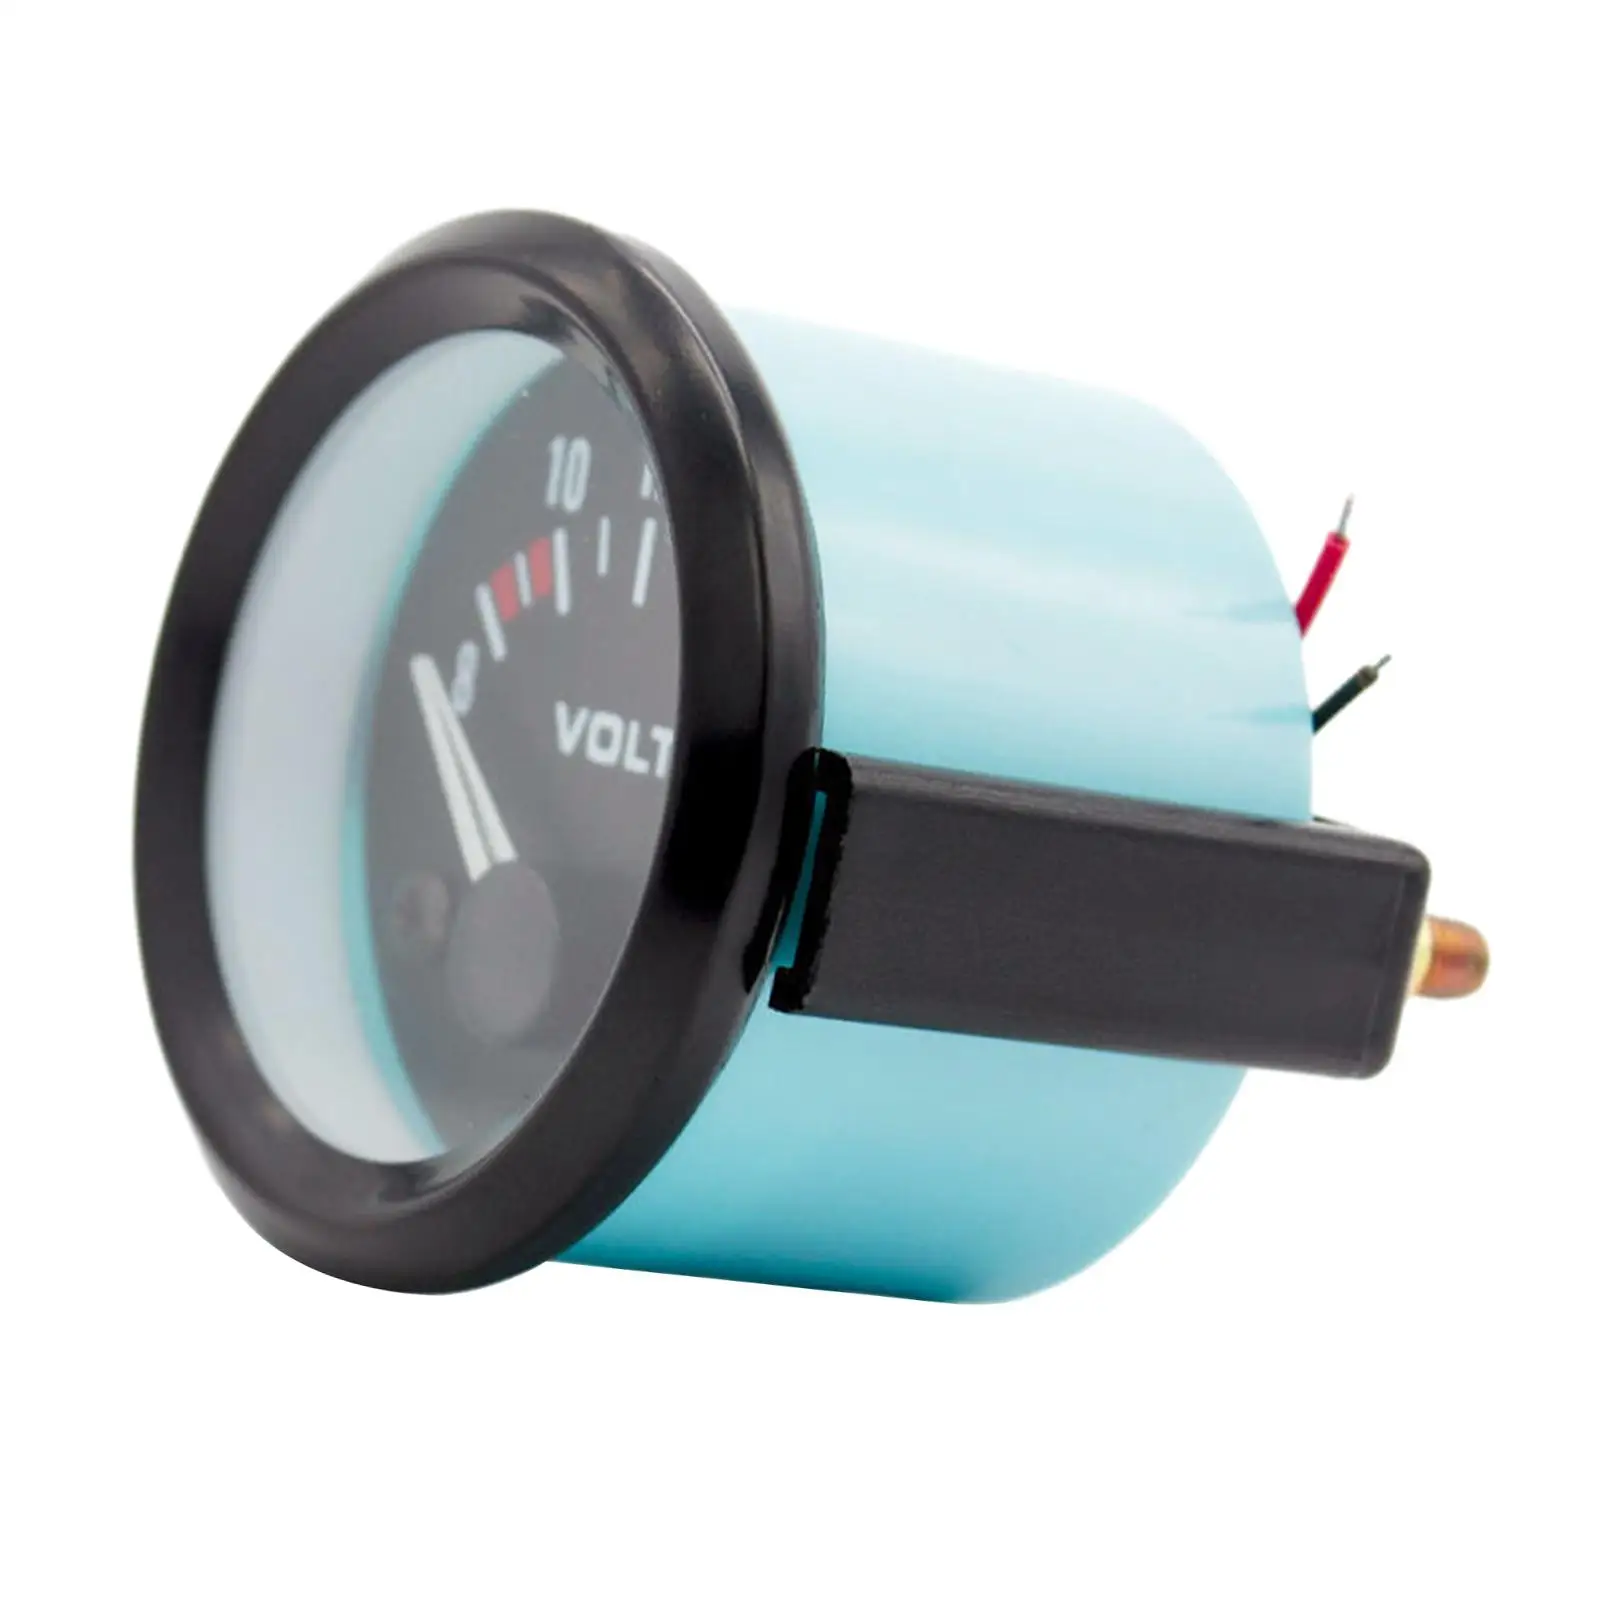 Electrical Car Voltmeter Diameter 2